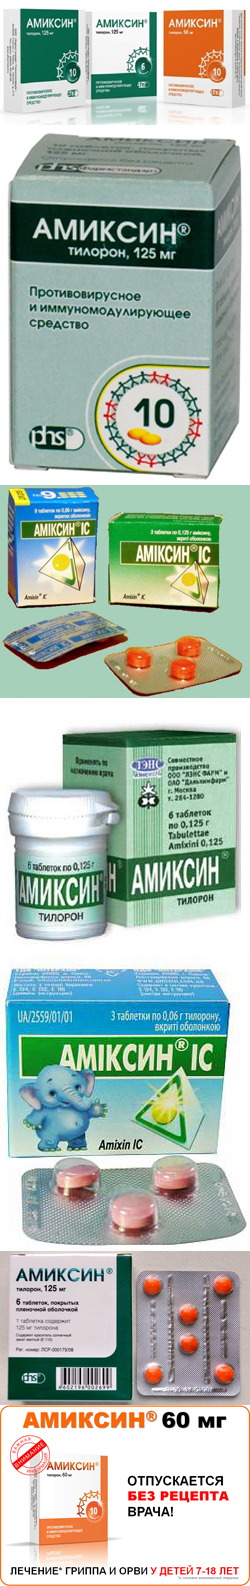 Амиксин. Фармакологическая группа, механизм действия, состав препарата .